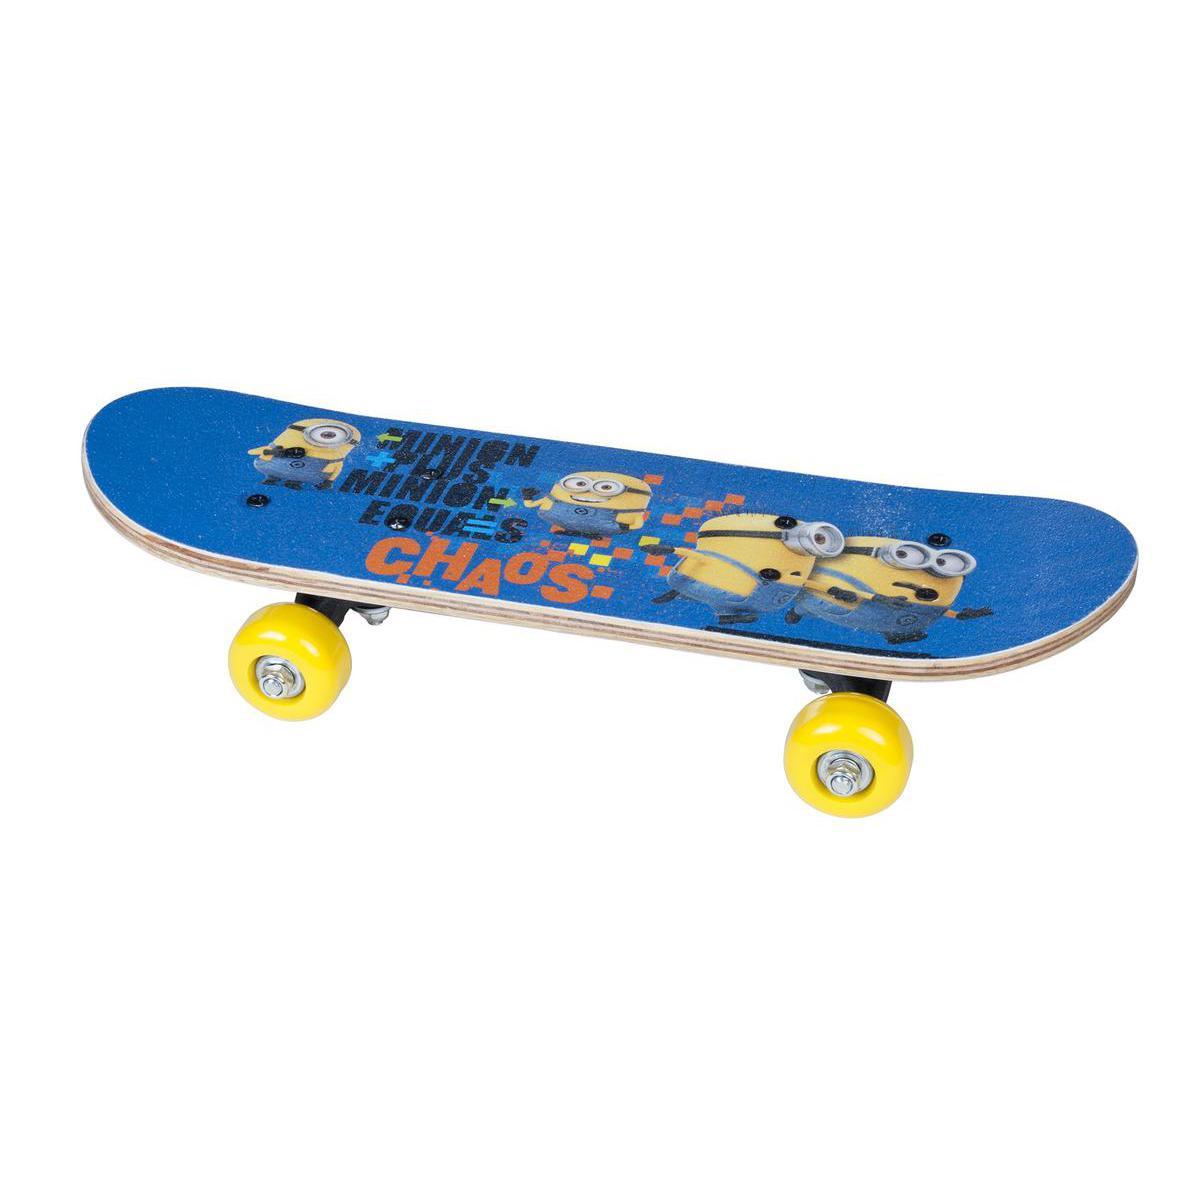 Skateboard - Bois, PVC et acier - 43 cm - Jaune et bleu